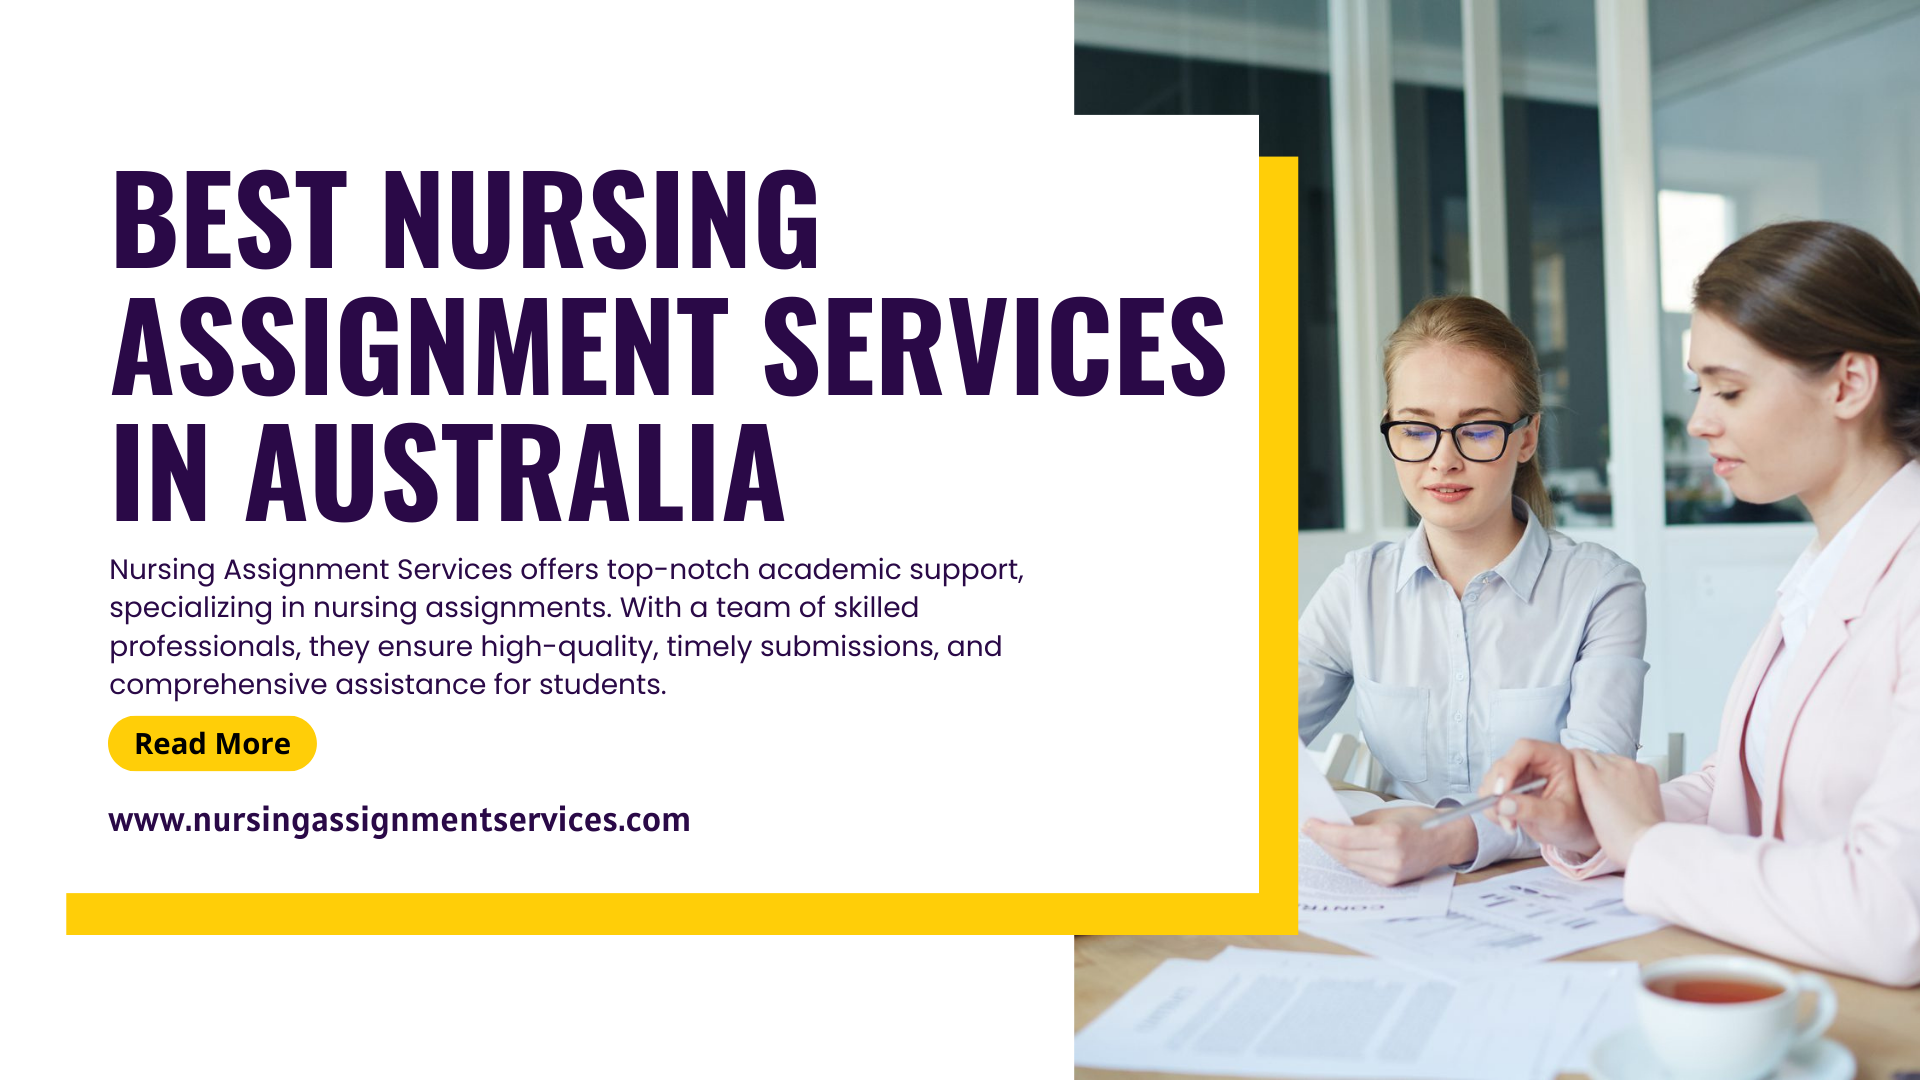 Nursing Assignment Services in Australia